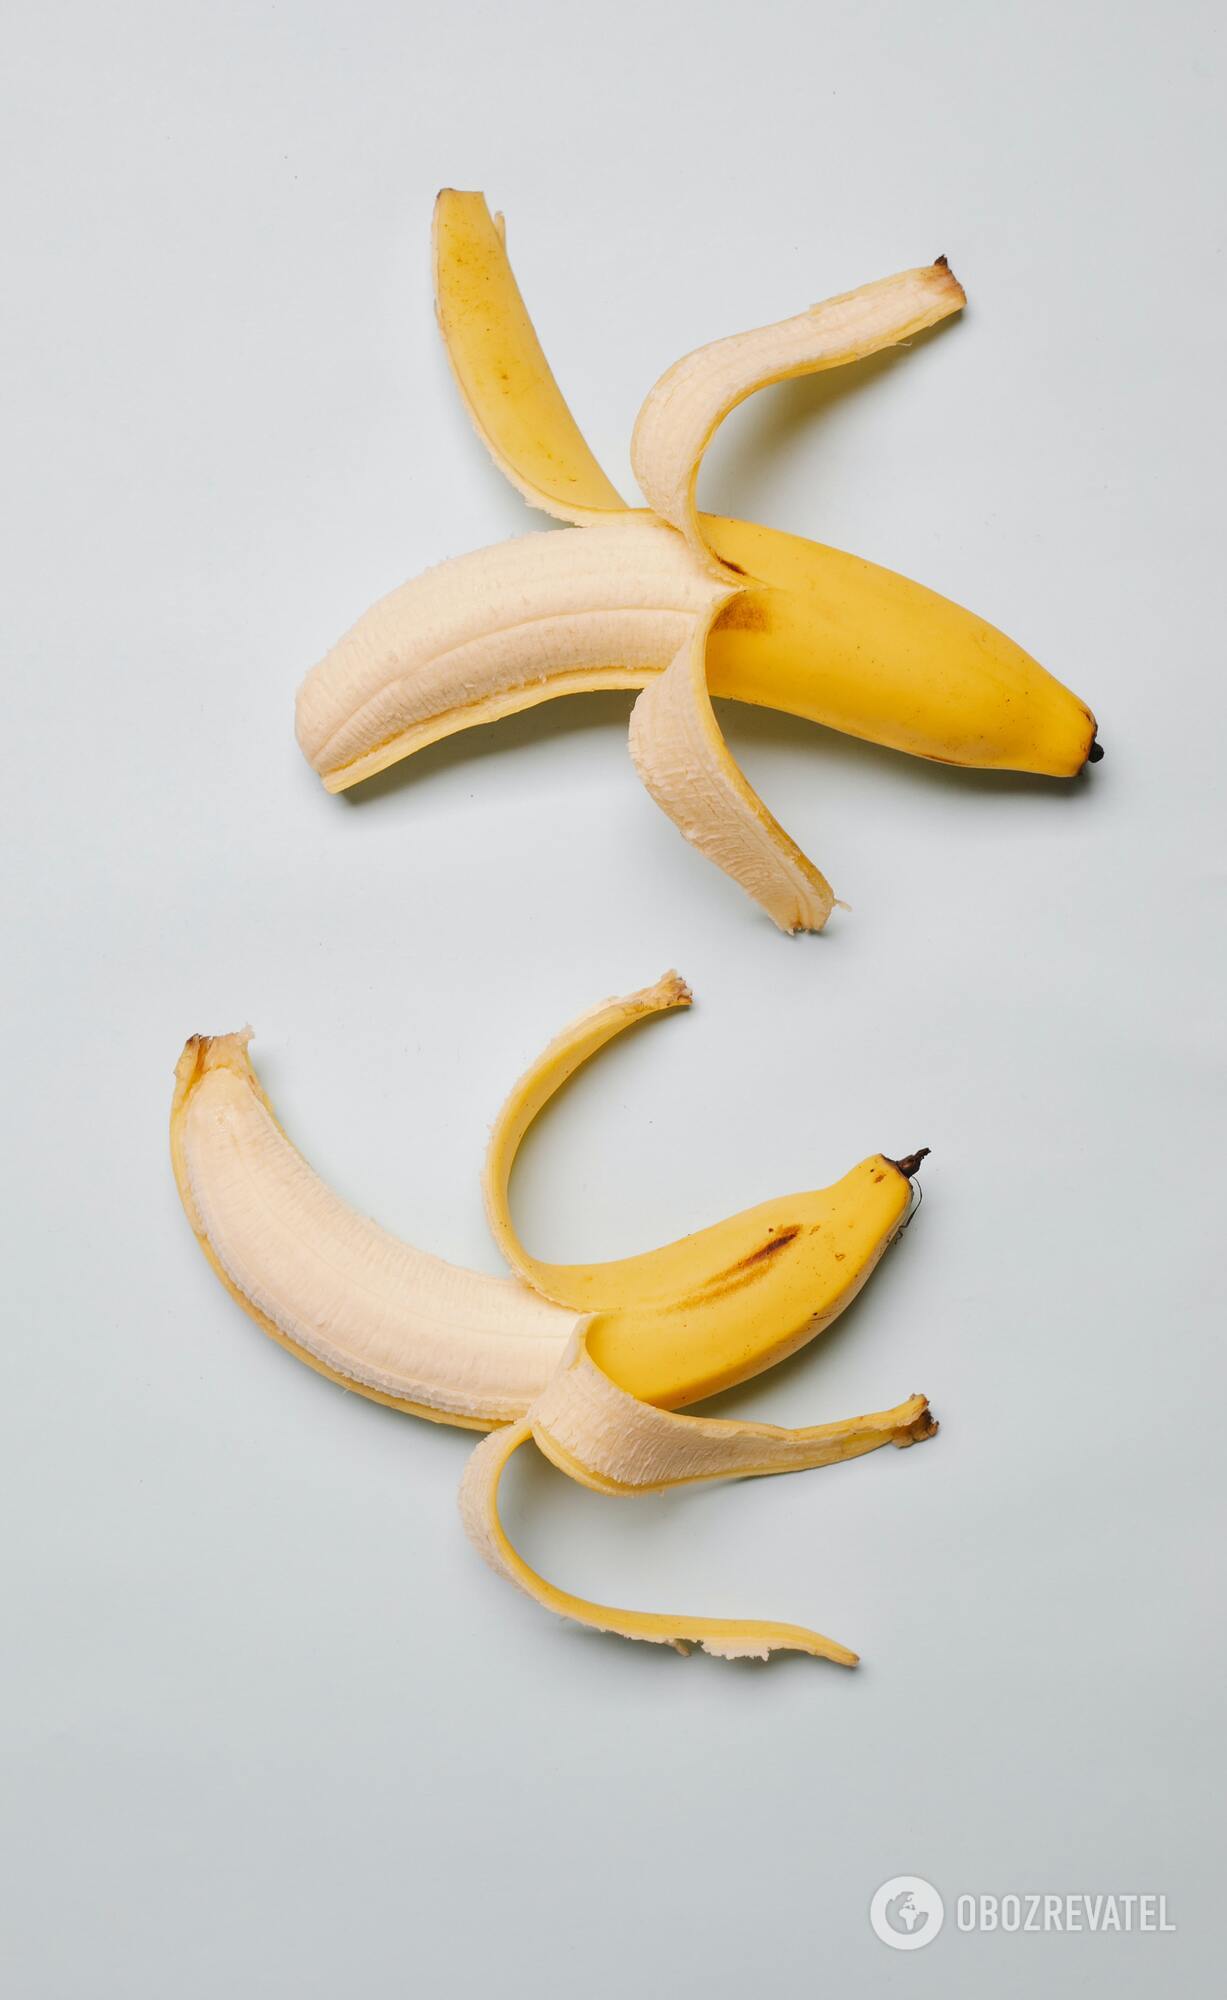 Сколько бананов можно съедать в день